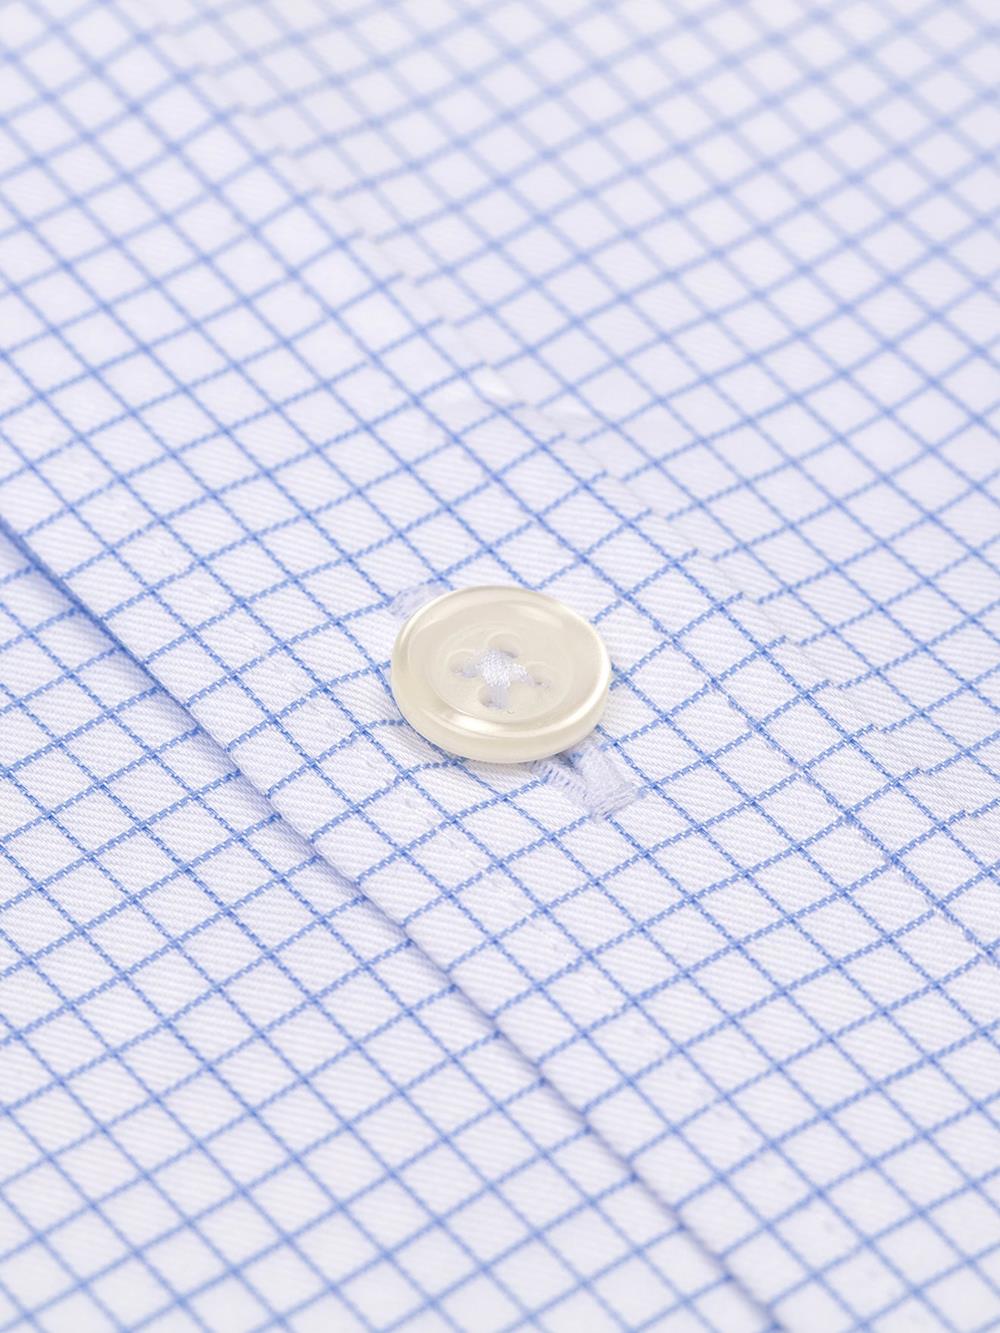 Tailliertes Hemd Gill mit himmelblauen Karos - Kurzem Kragen